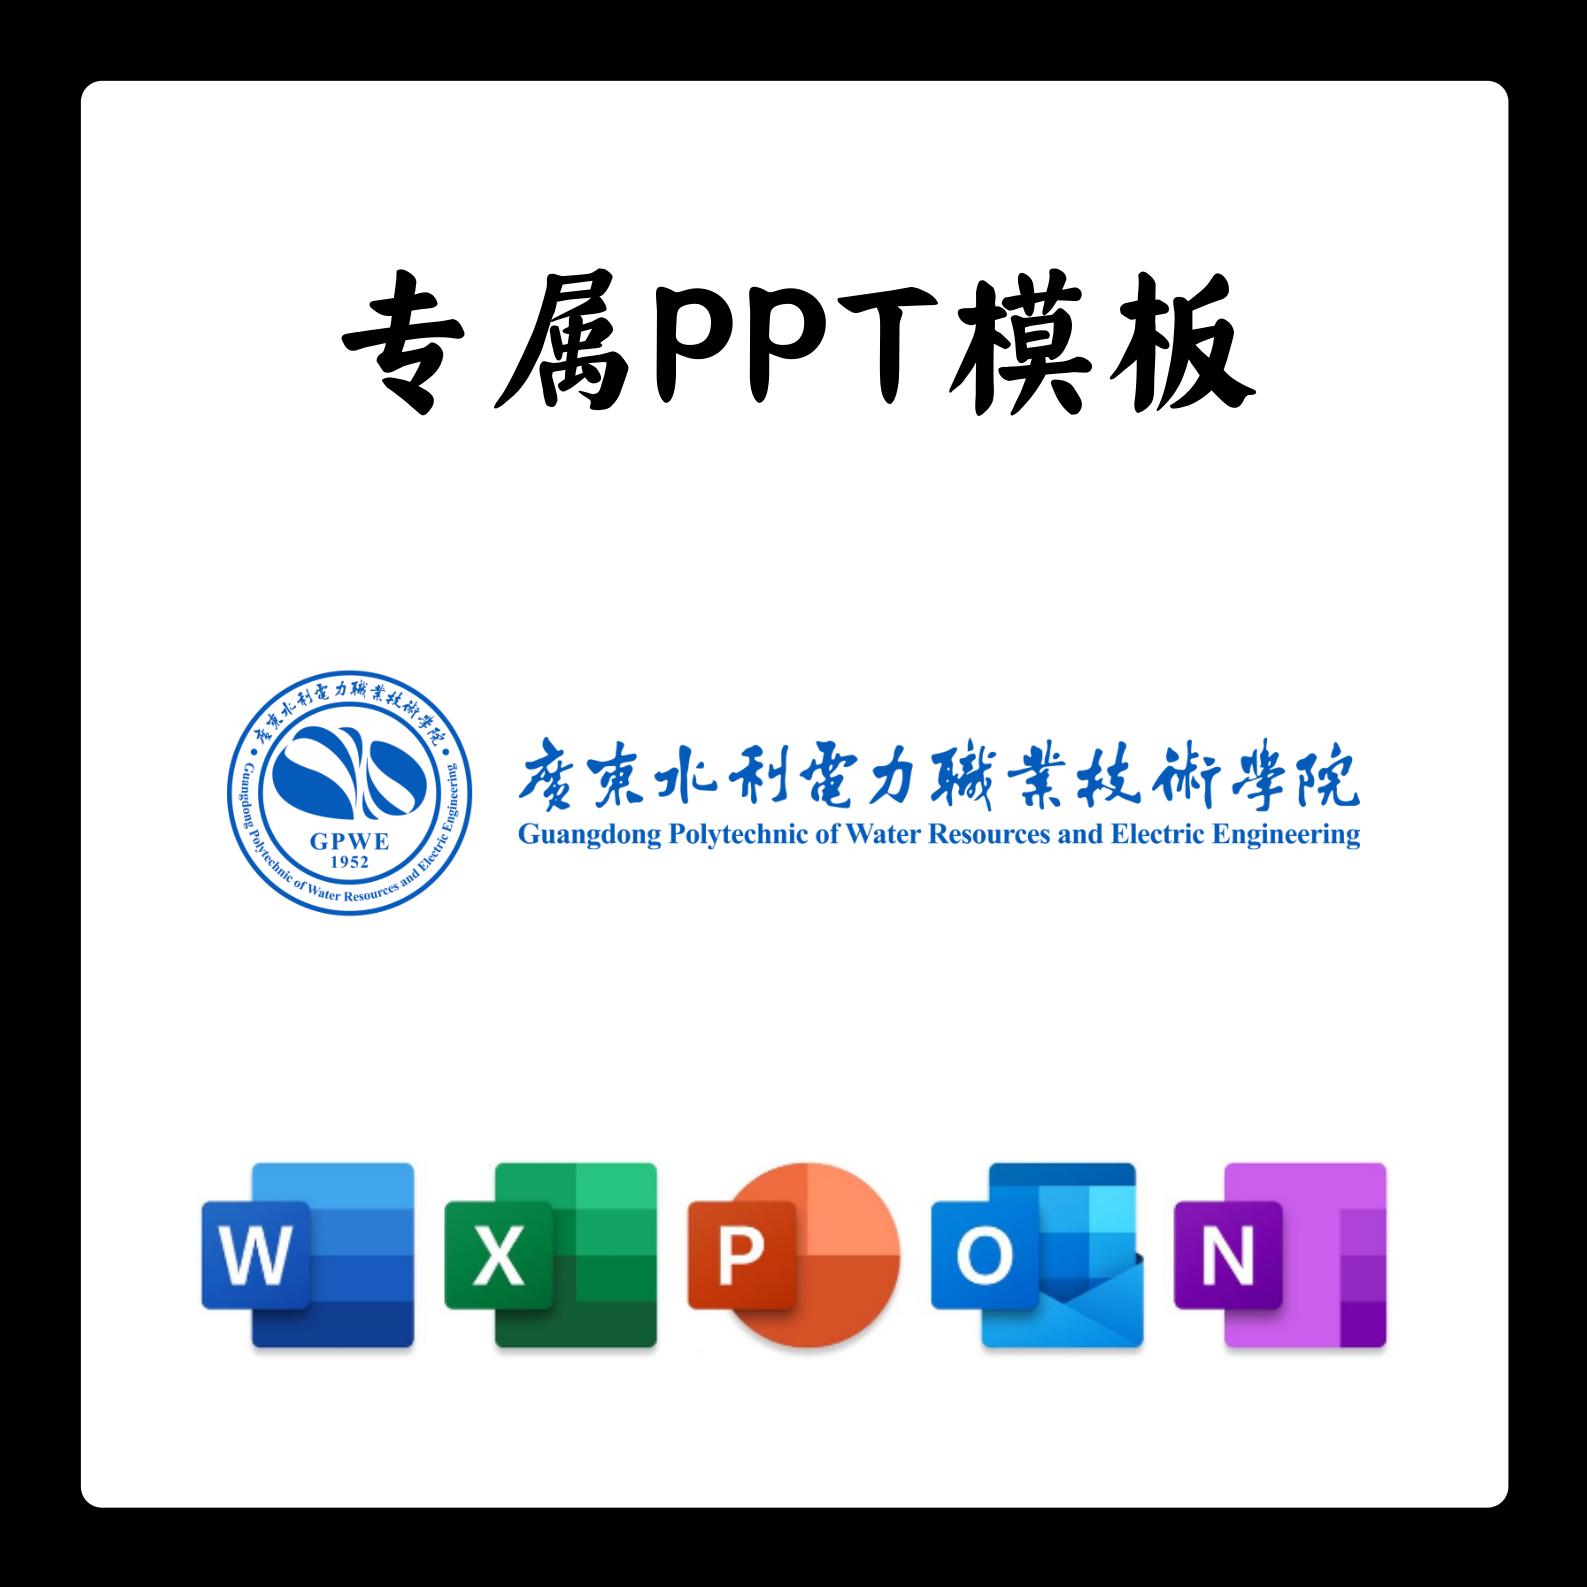 广东水利水电职业技术学院PPT模板开题中期结题毕业答辩简约大气